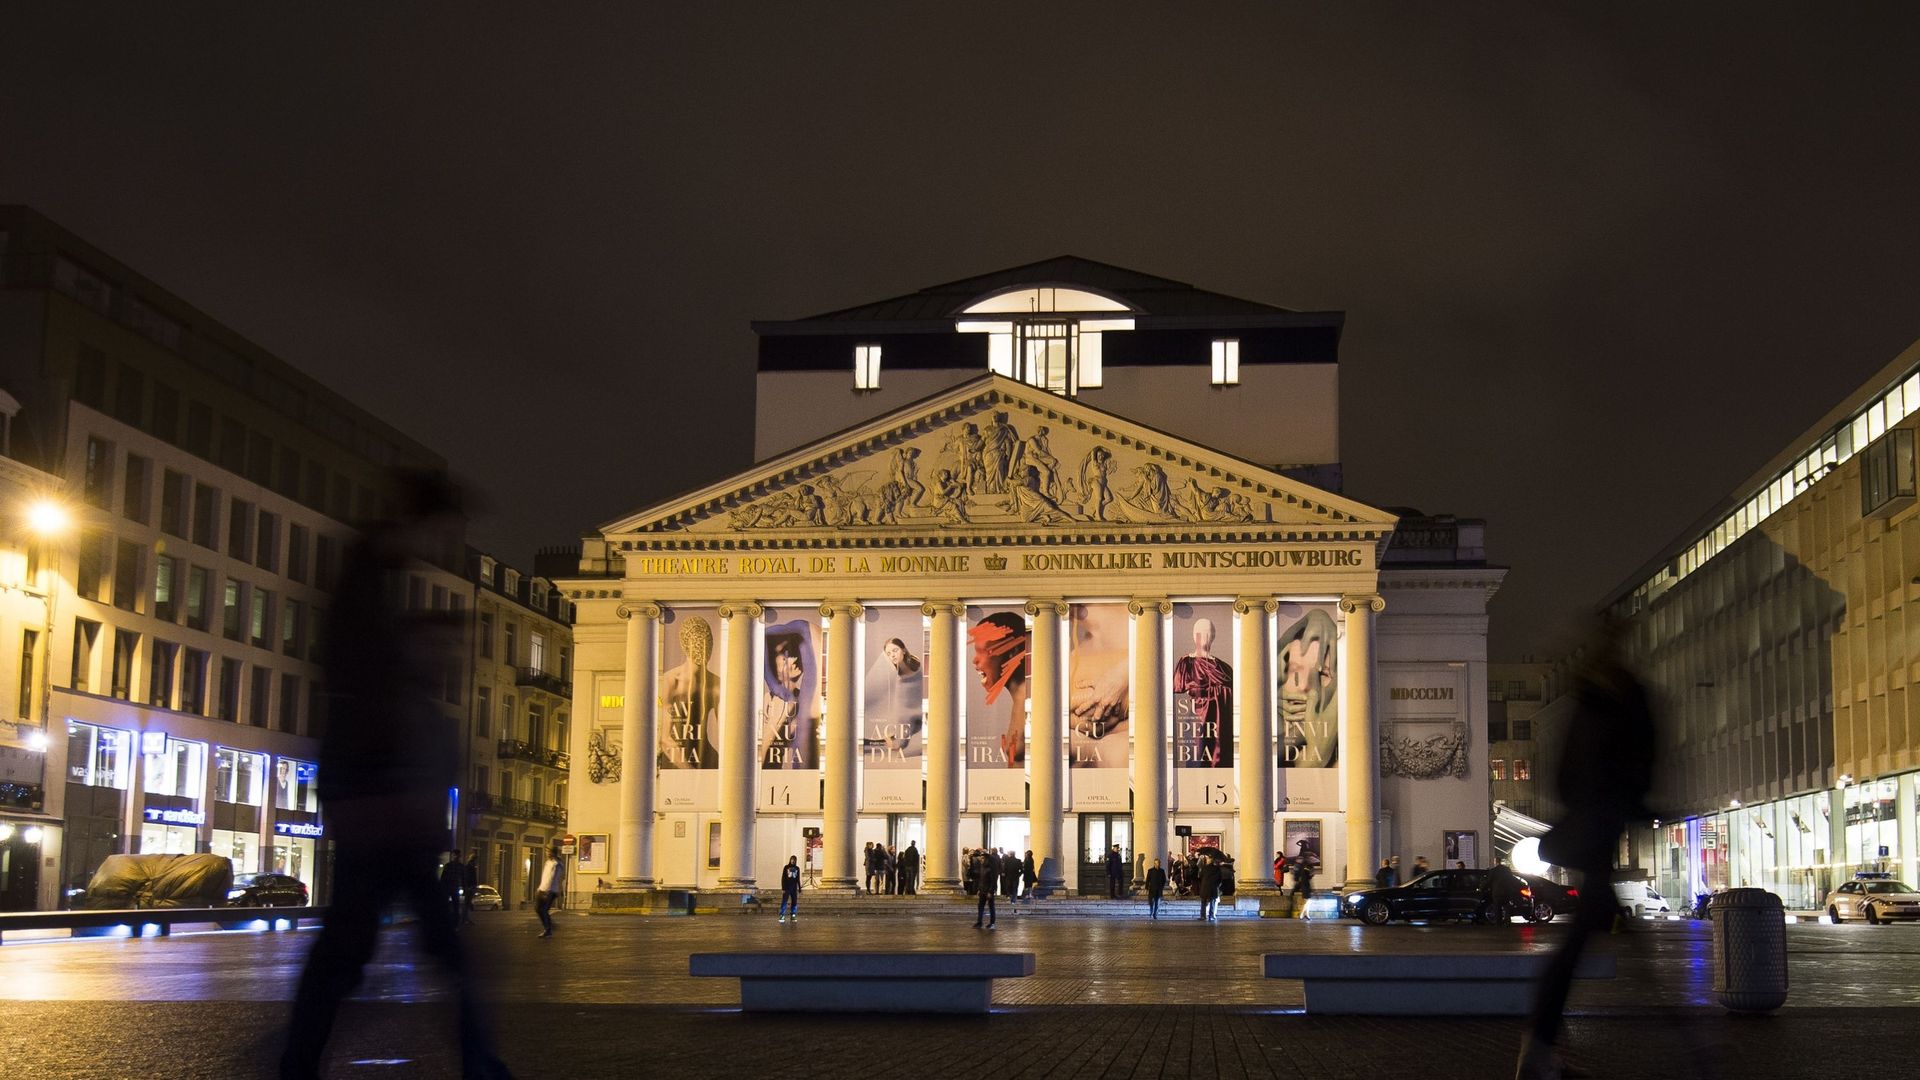 Après deux saisons extra-muros, le Théâtre royal de la Monnaie retrouve sa salle rénovée